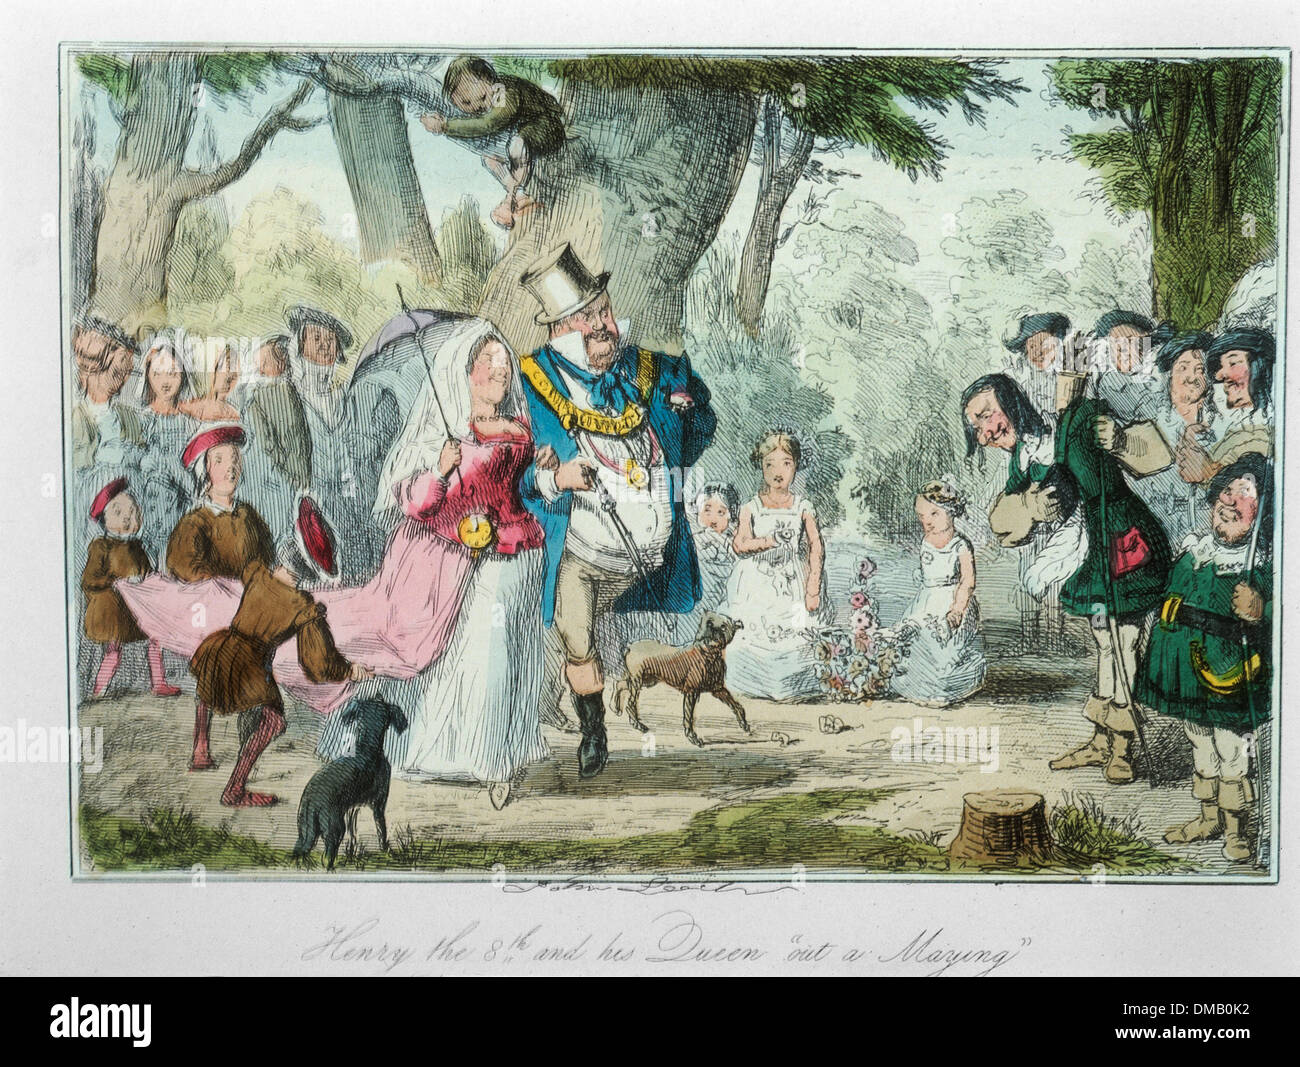 Henry le 8e et sa reine 'out', Marying une bande dessinée Histoire de l'Angleterre, gravure couleur par John Leech, 1850 Banque D'Images